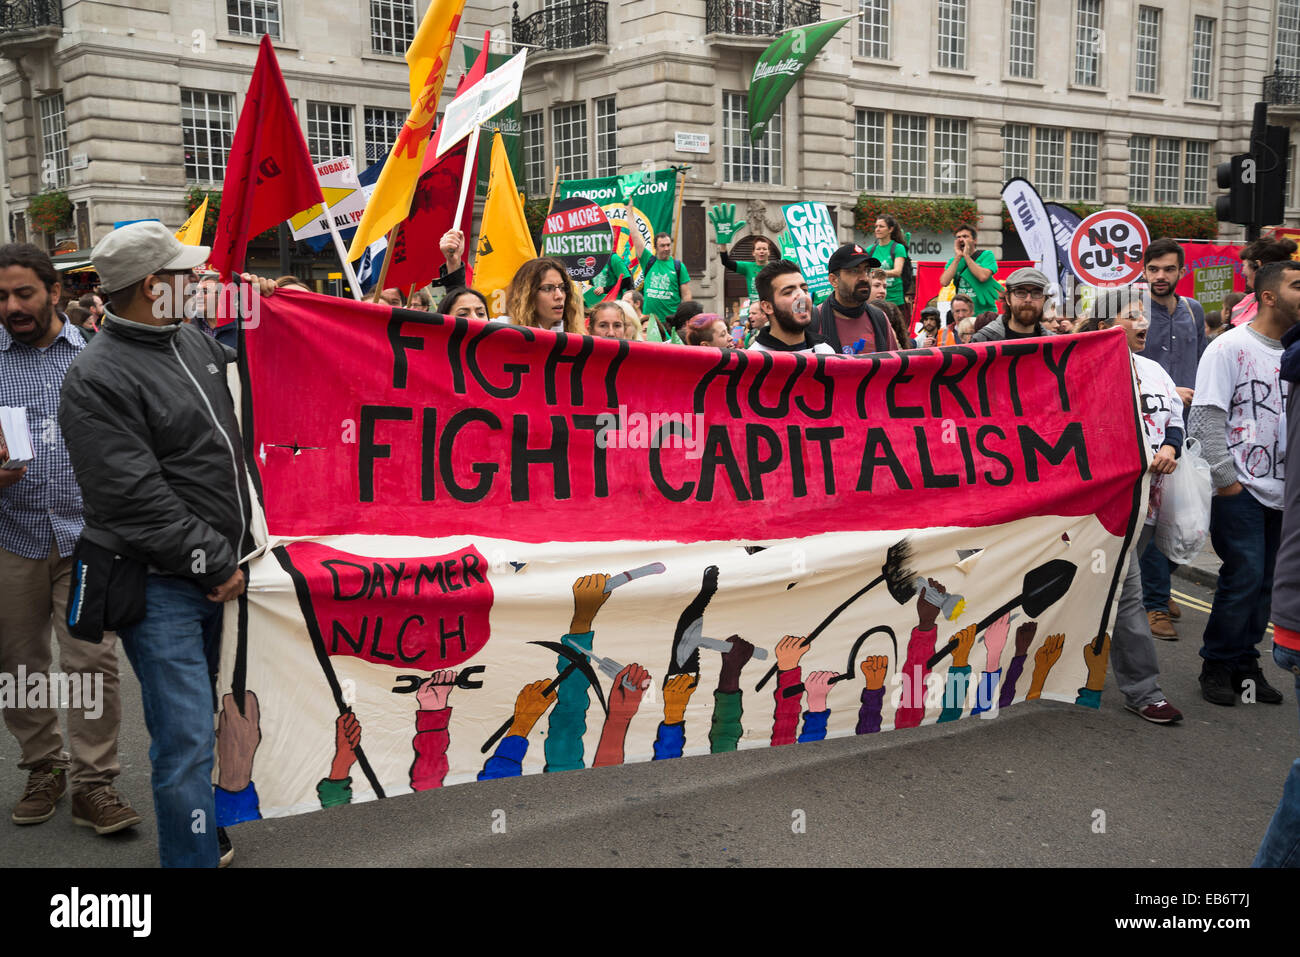 Gran Bretaña necesita un aumento salarial de marzo, Londres, 18 de octubre de 2014, REINO UNIDO Foto de stock